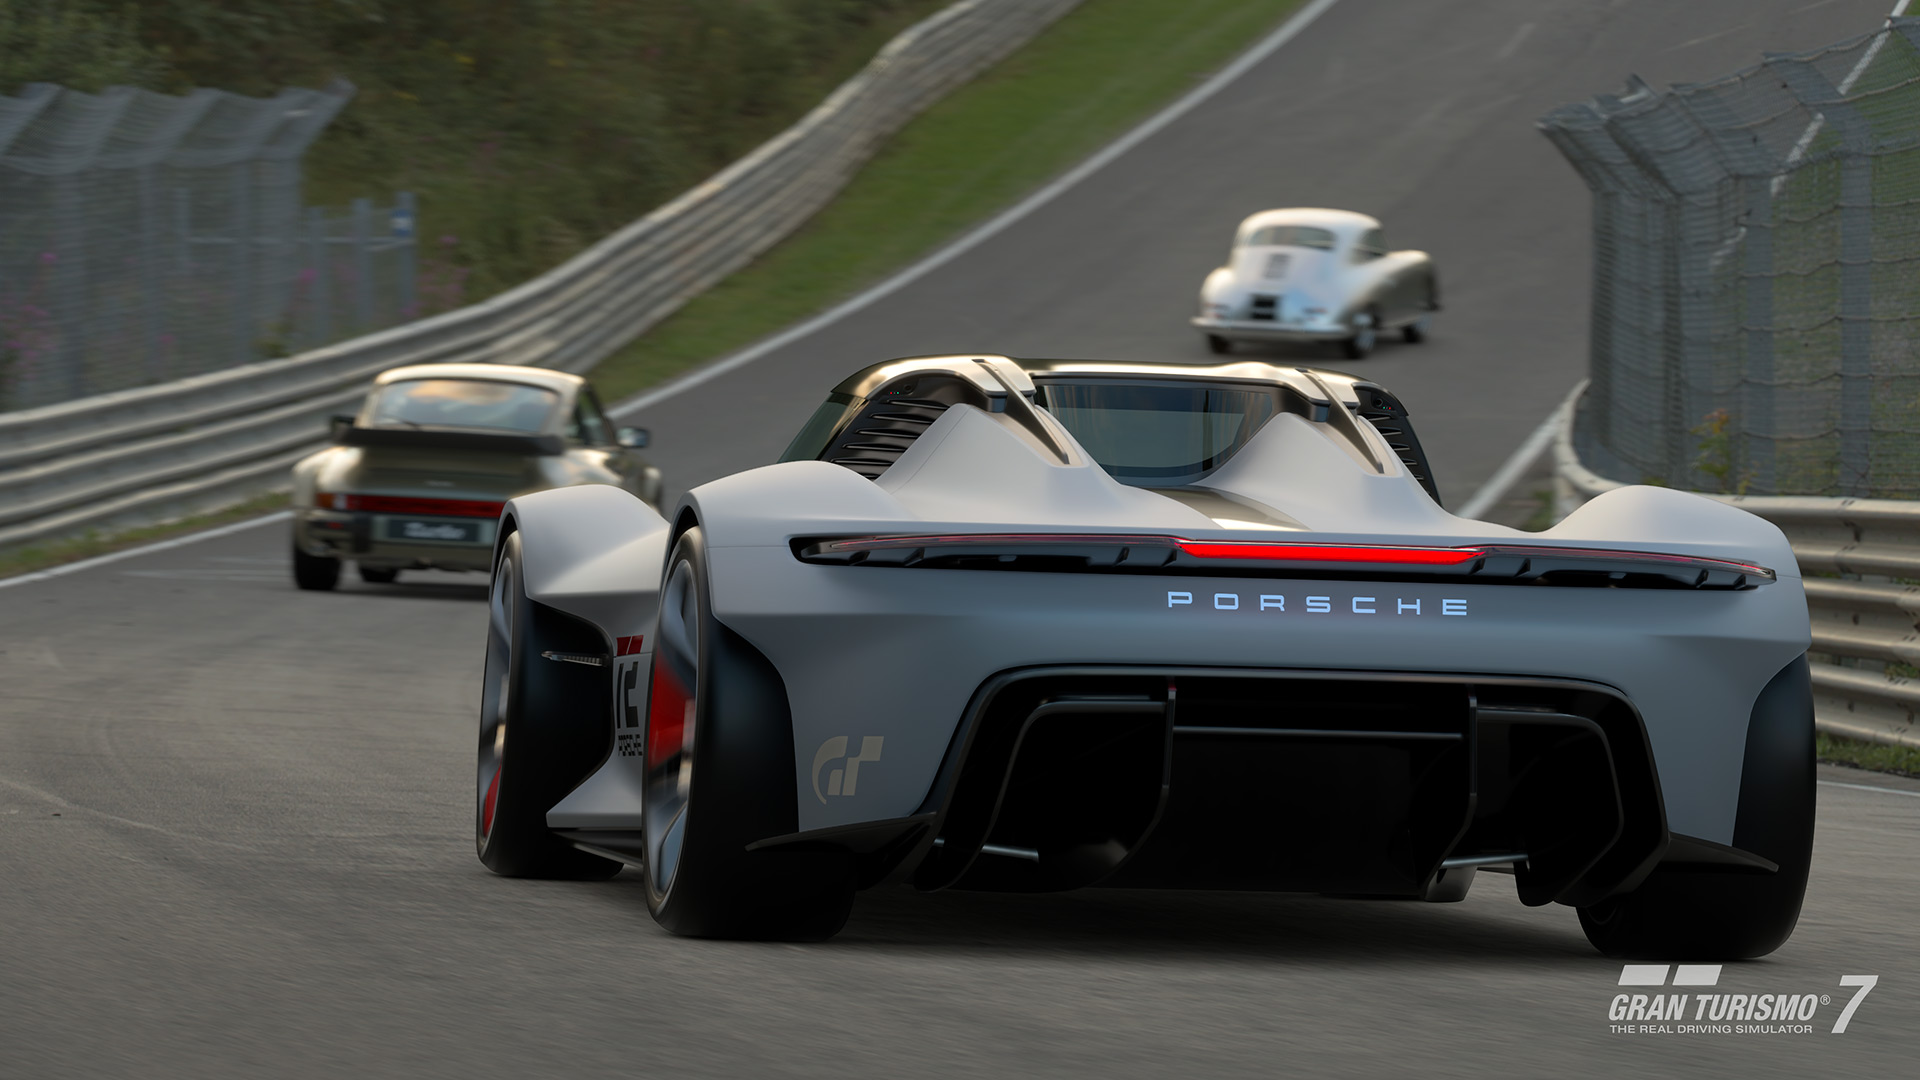 Los desarrolladores de Gran Turismo 7 han publicado una actualización mensual del juego con nuevos coches y modos.